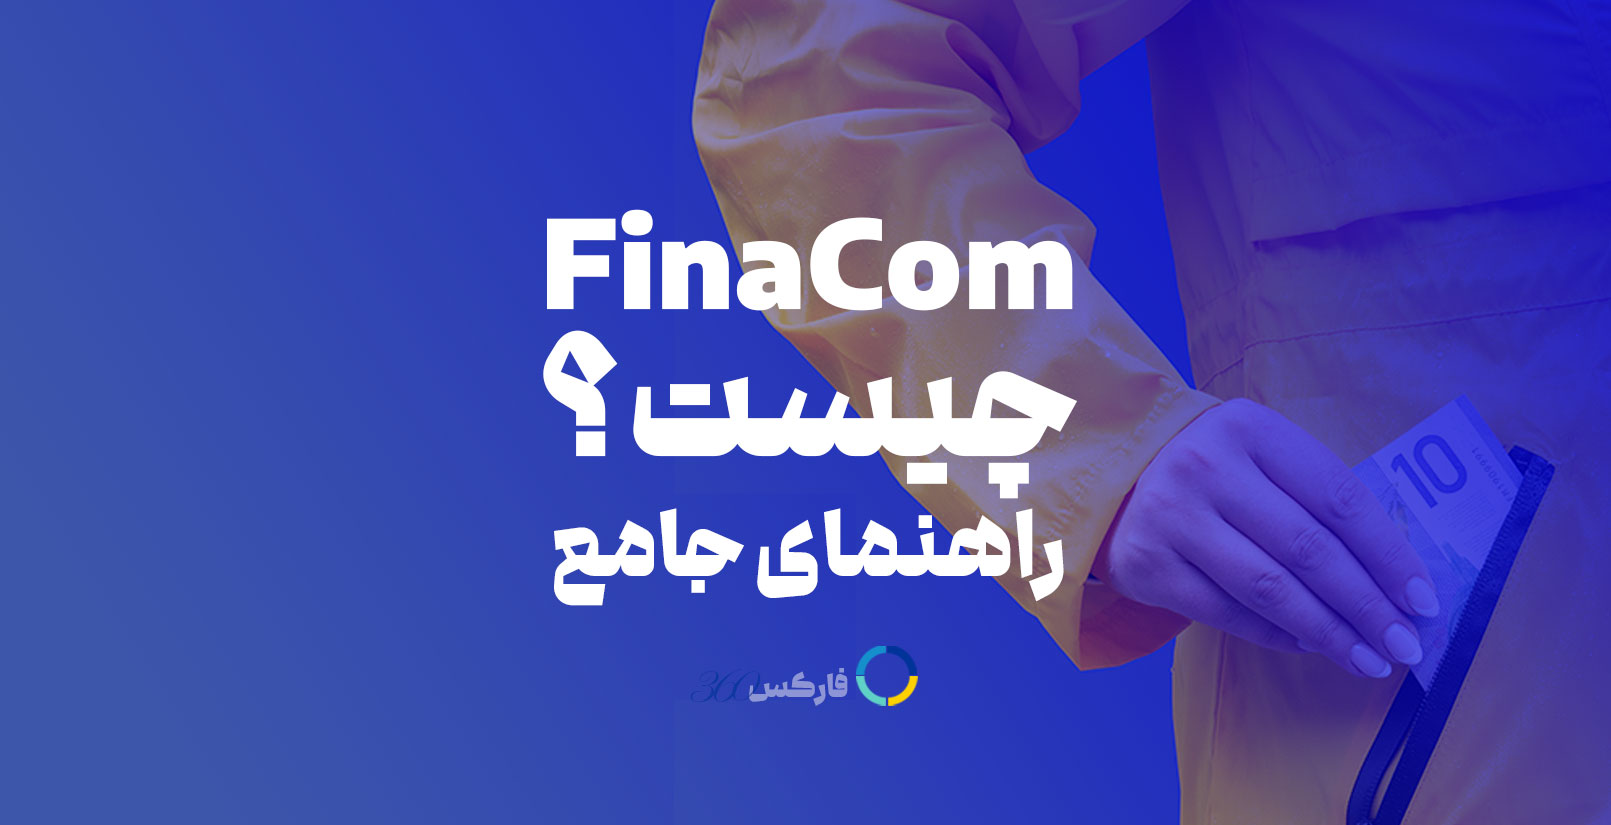 Financial Commission | FinaCom